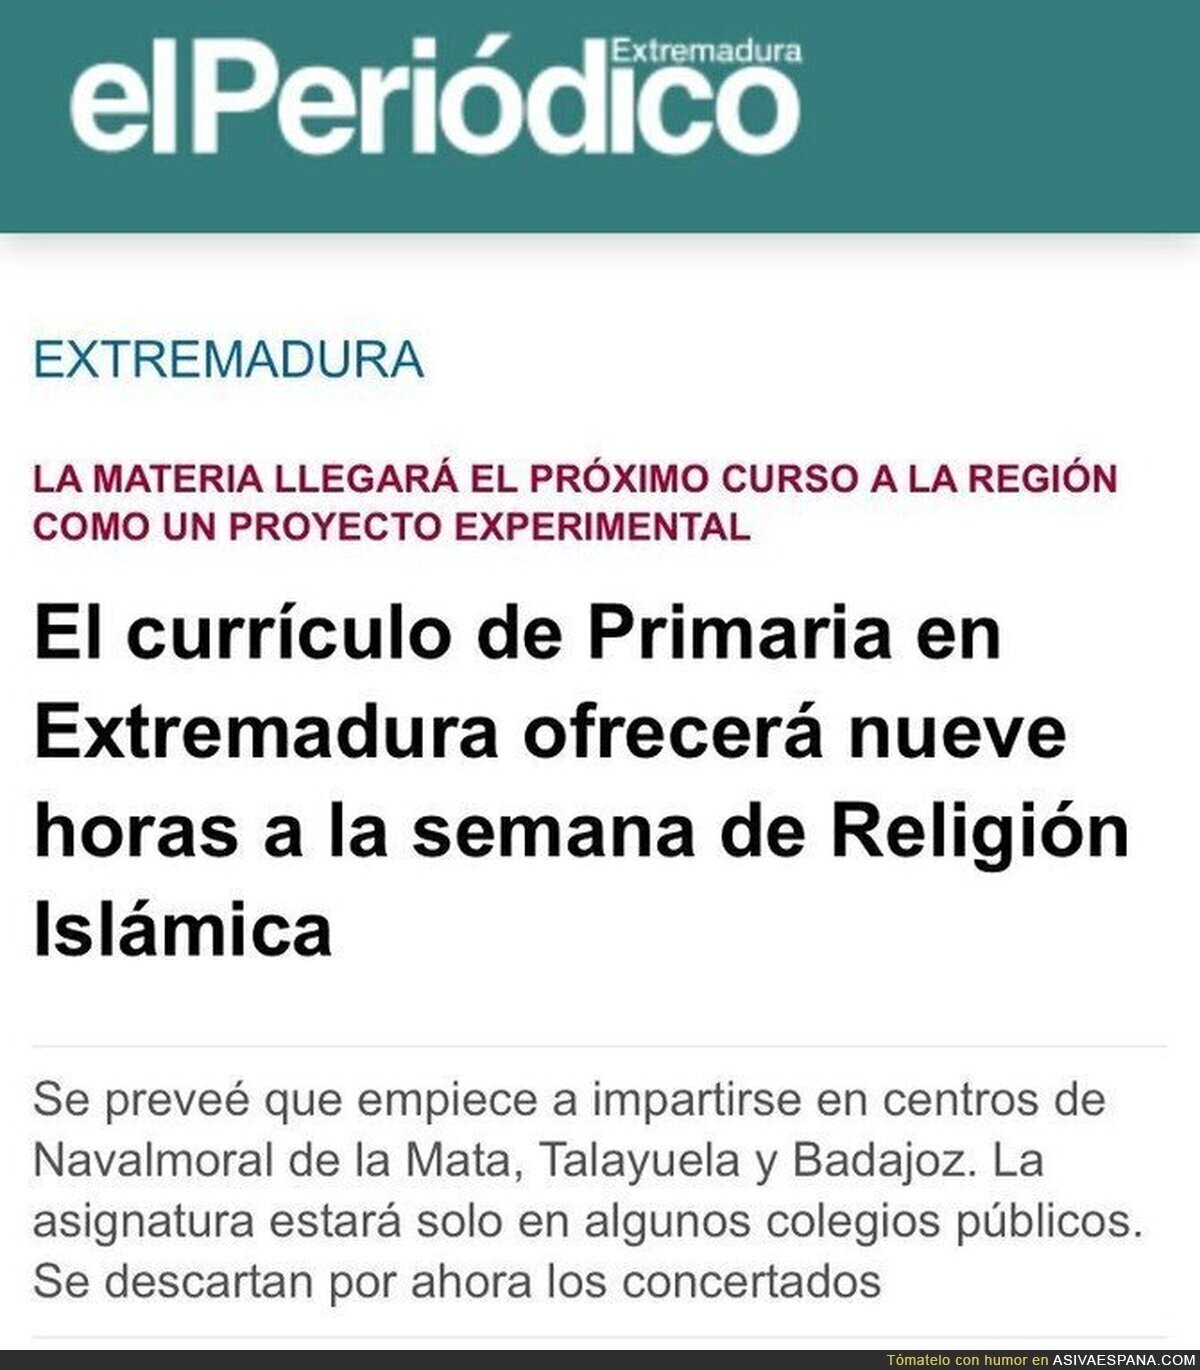 Quitan horas de religión católica(mayoritaria en España) y ponen 9 horas de Islam. ¡Bien hecho!